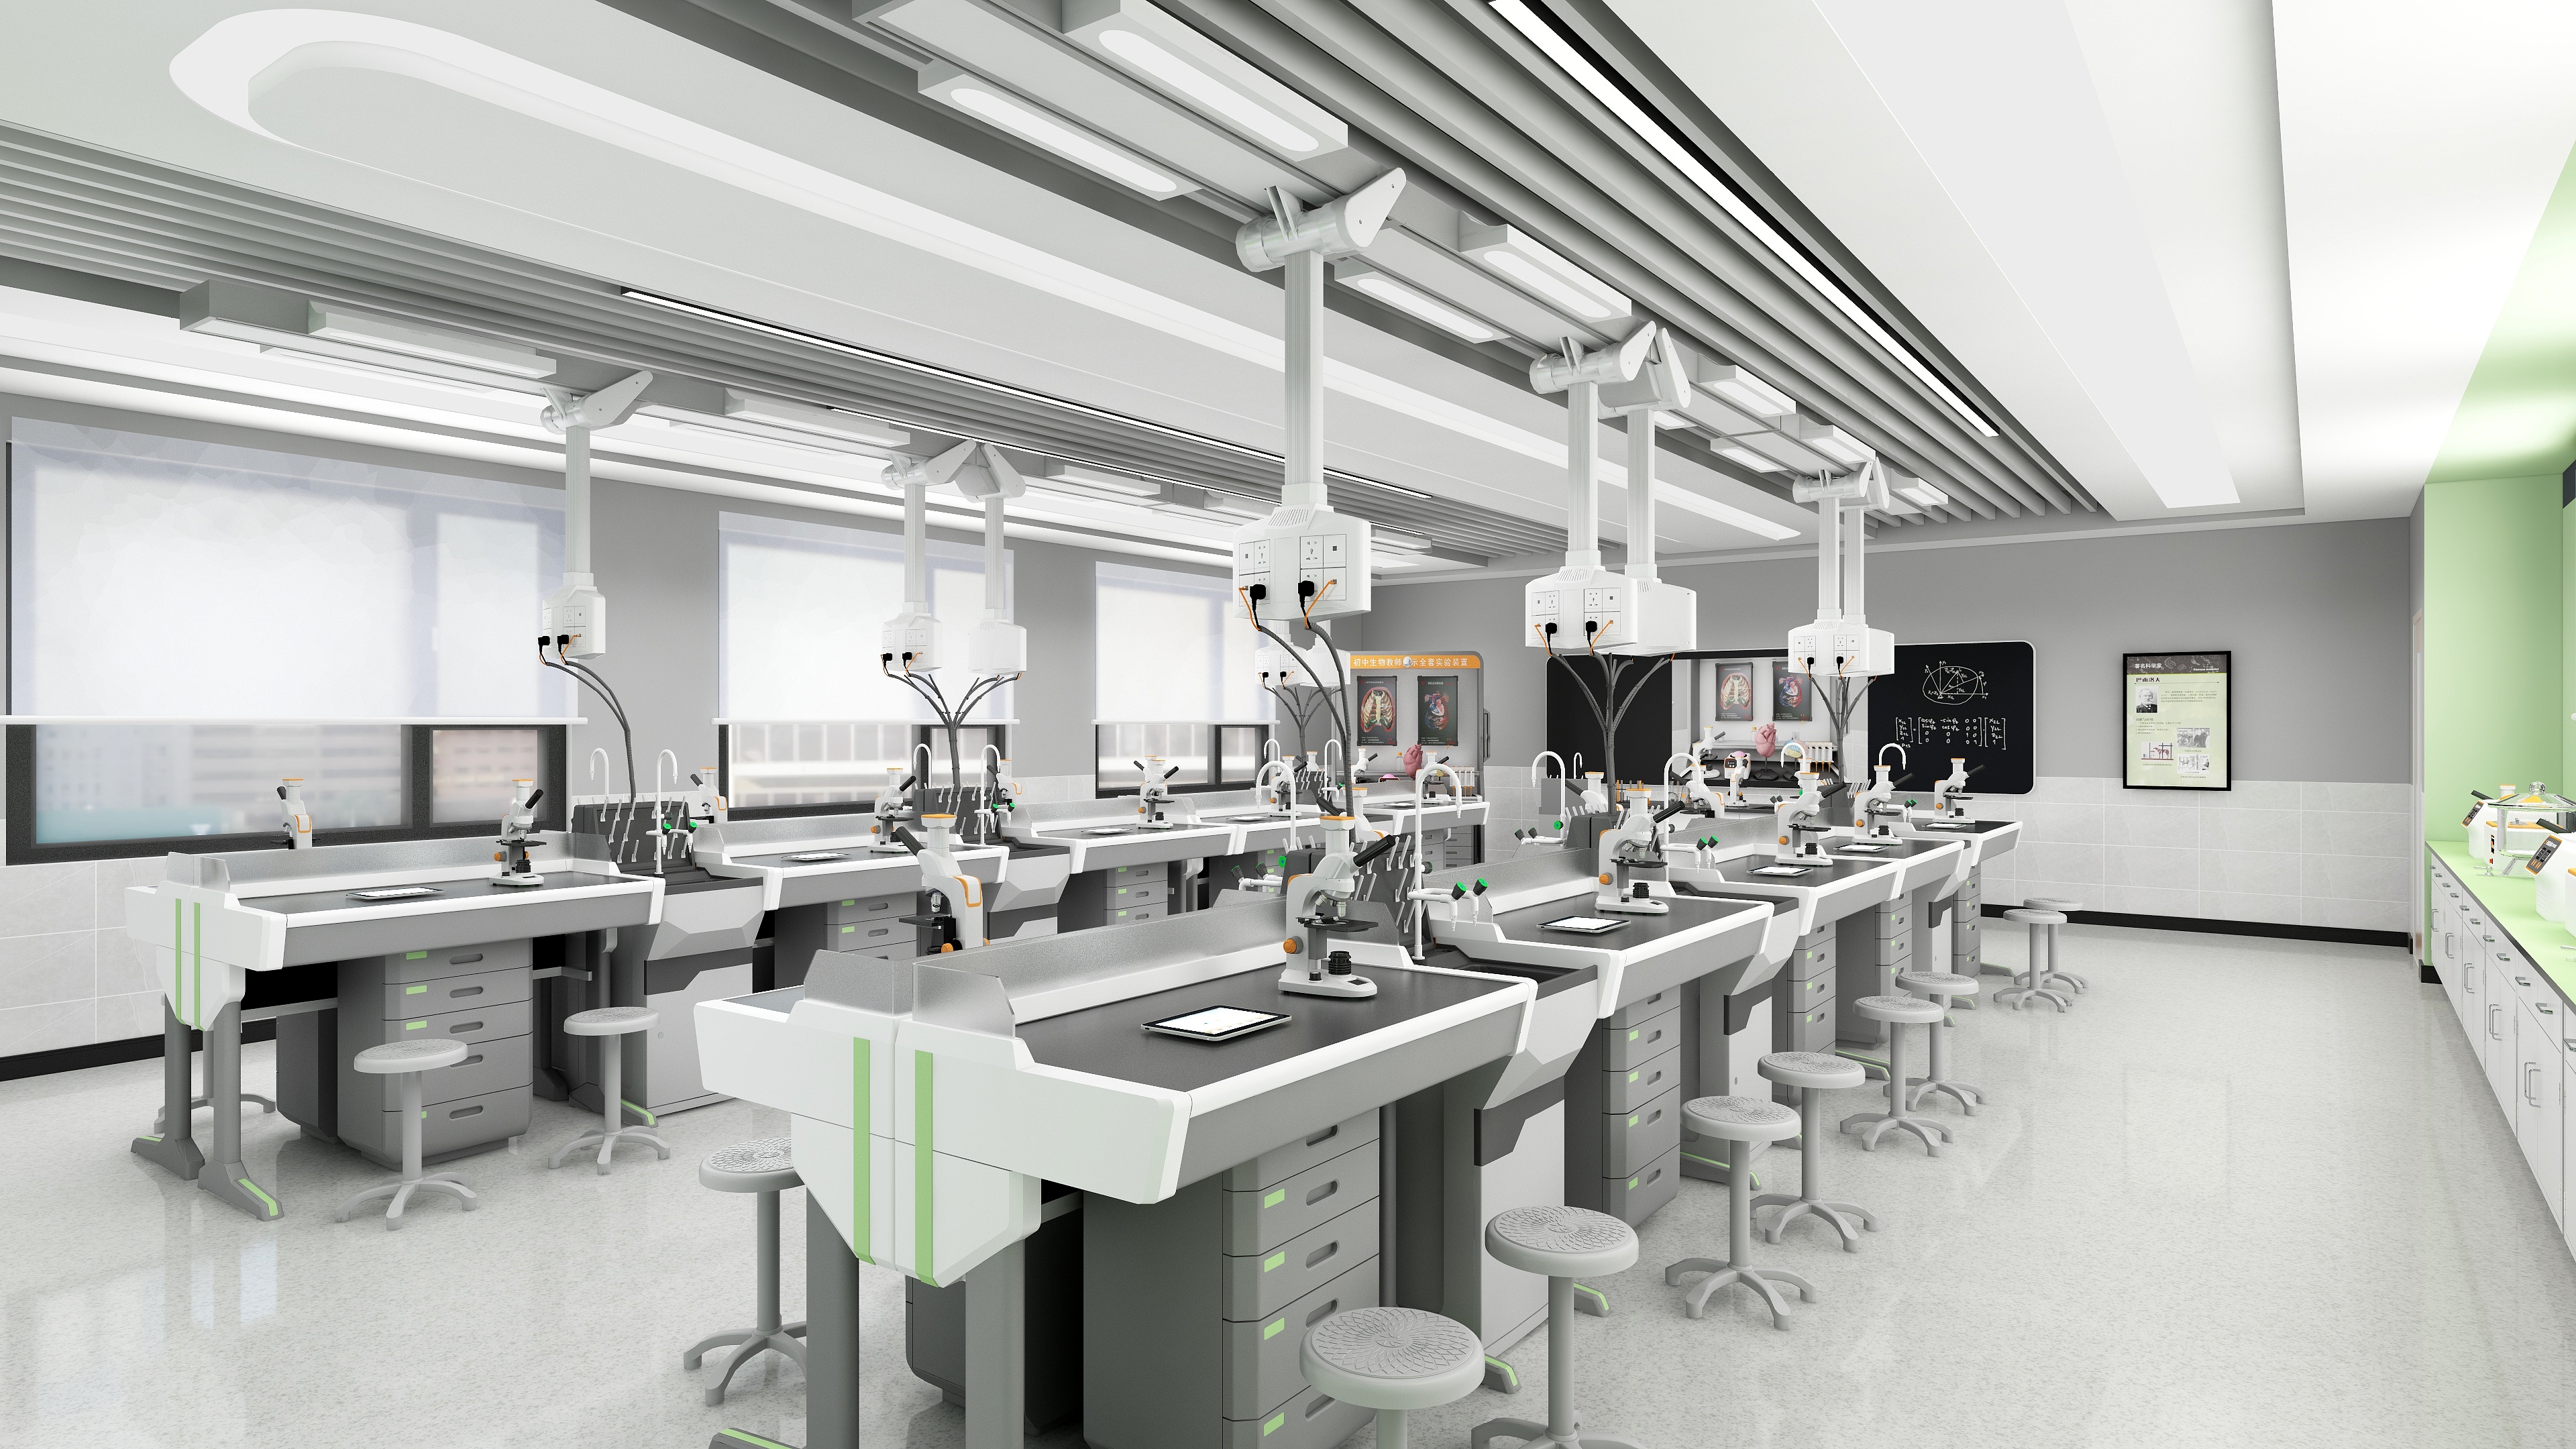 3初中生物教考仪器实验室-初中生物数码显微实验室-生物数码显微实验室角度-2